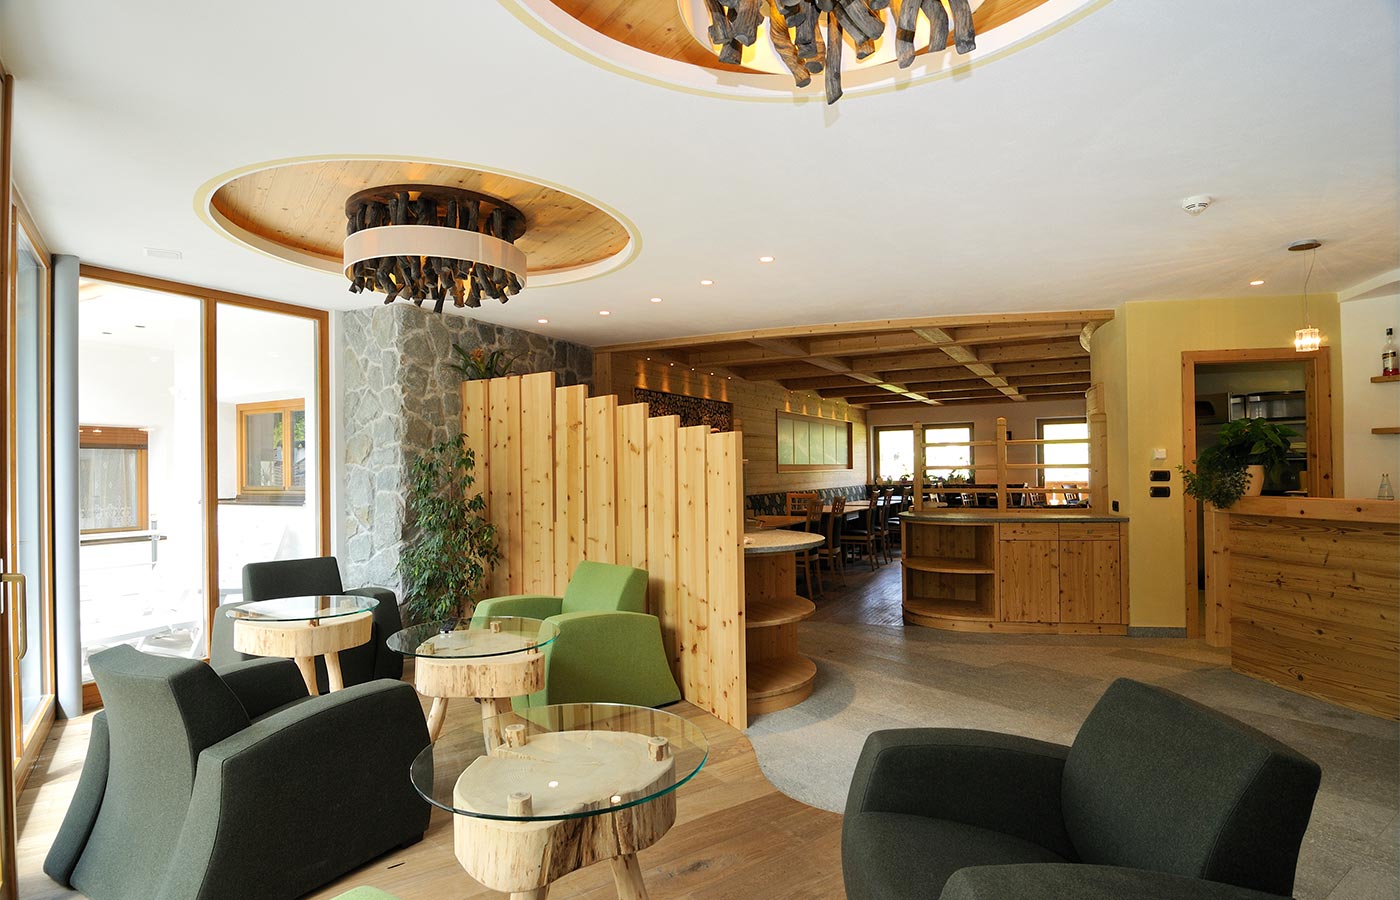 Sala da pranzo in stile moderno dell'Hotel 3 stelle in Val Gardena